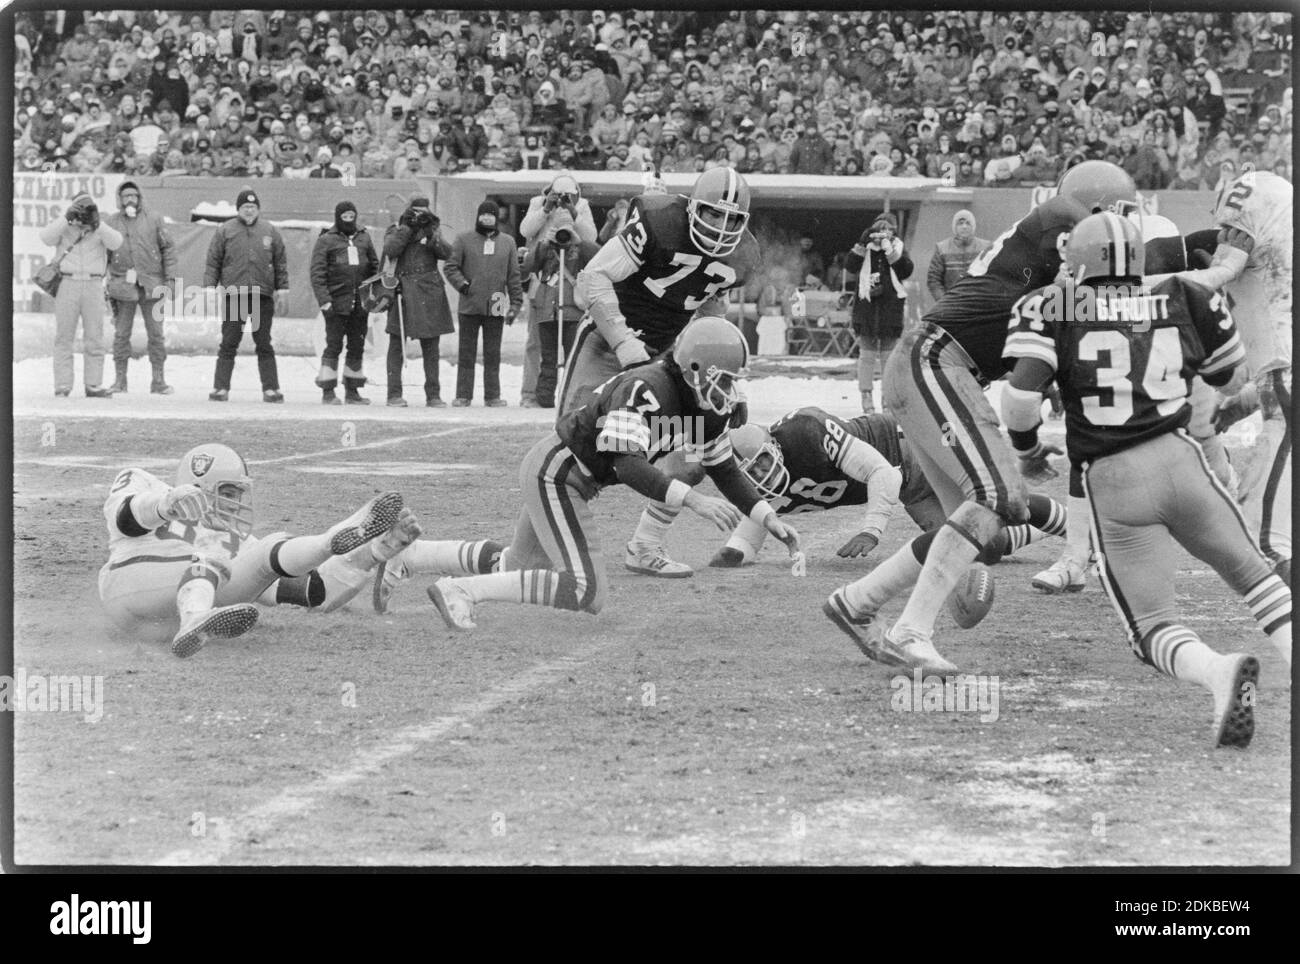 Cleveland Browns Quarterback Brian Sipe (17) jagt einen Fumble während des Playoff-Spiels gegen die Oakland Raiders im Cleveland Stadium am 4. Januar 1981. Ernie Mastroianni Foto Stockfoto